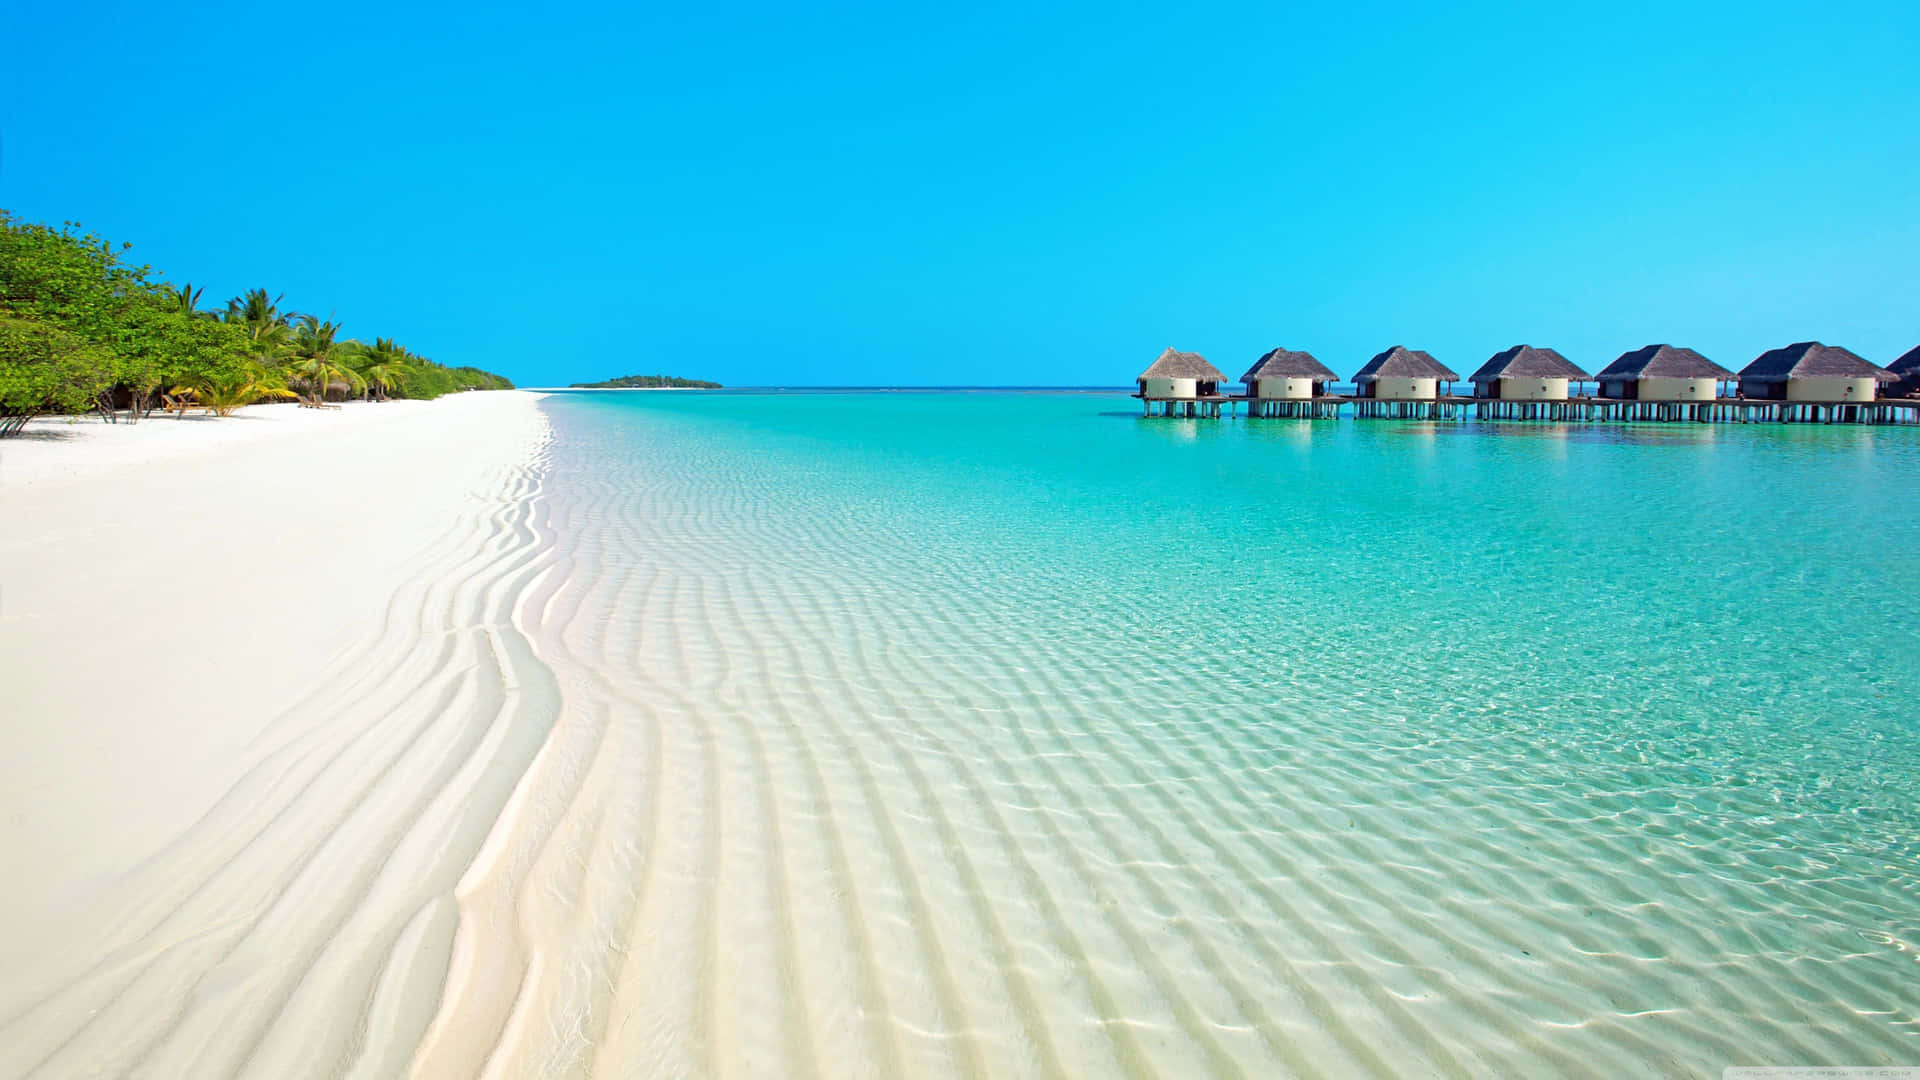 Unaspiaggia Di Sabbia Bianca Con Capanne E Un Oceano Blu Sfondo